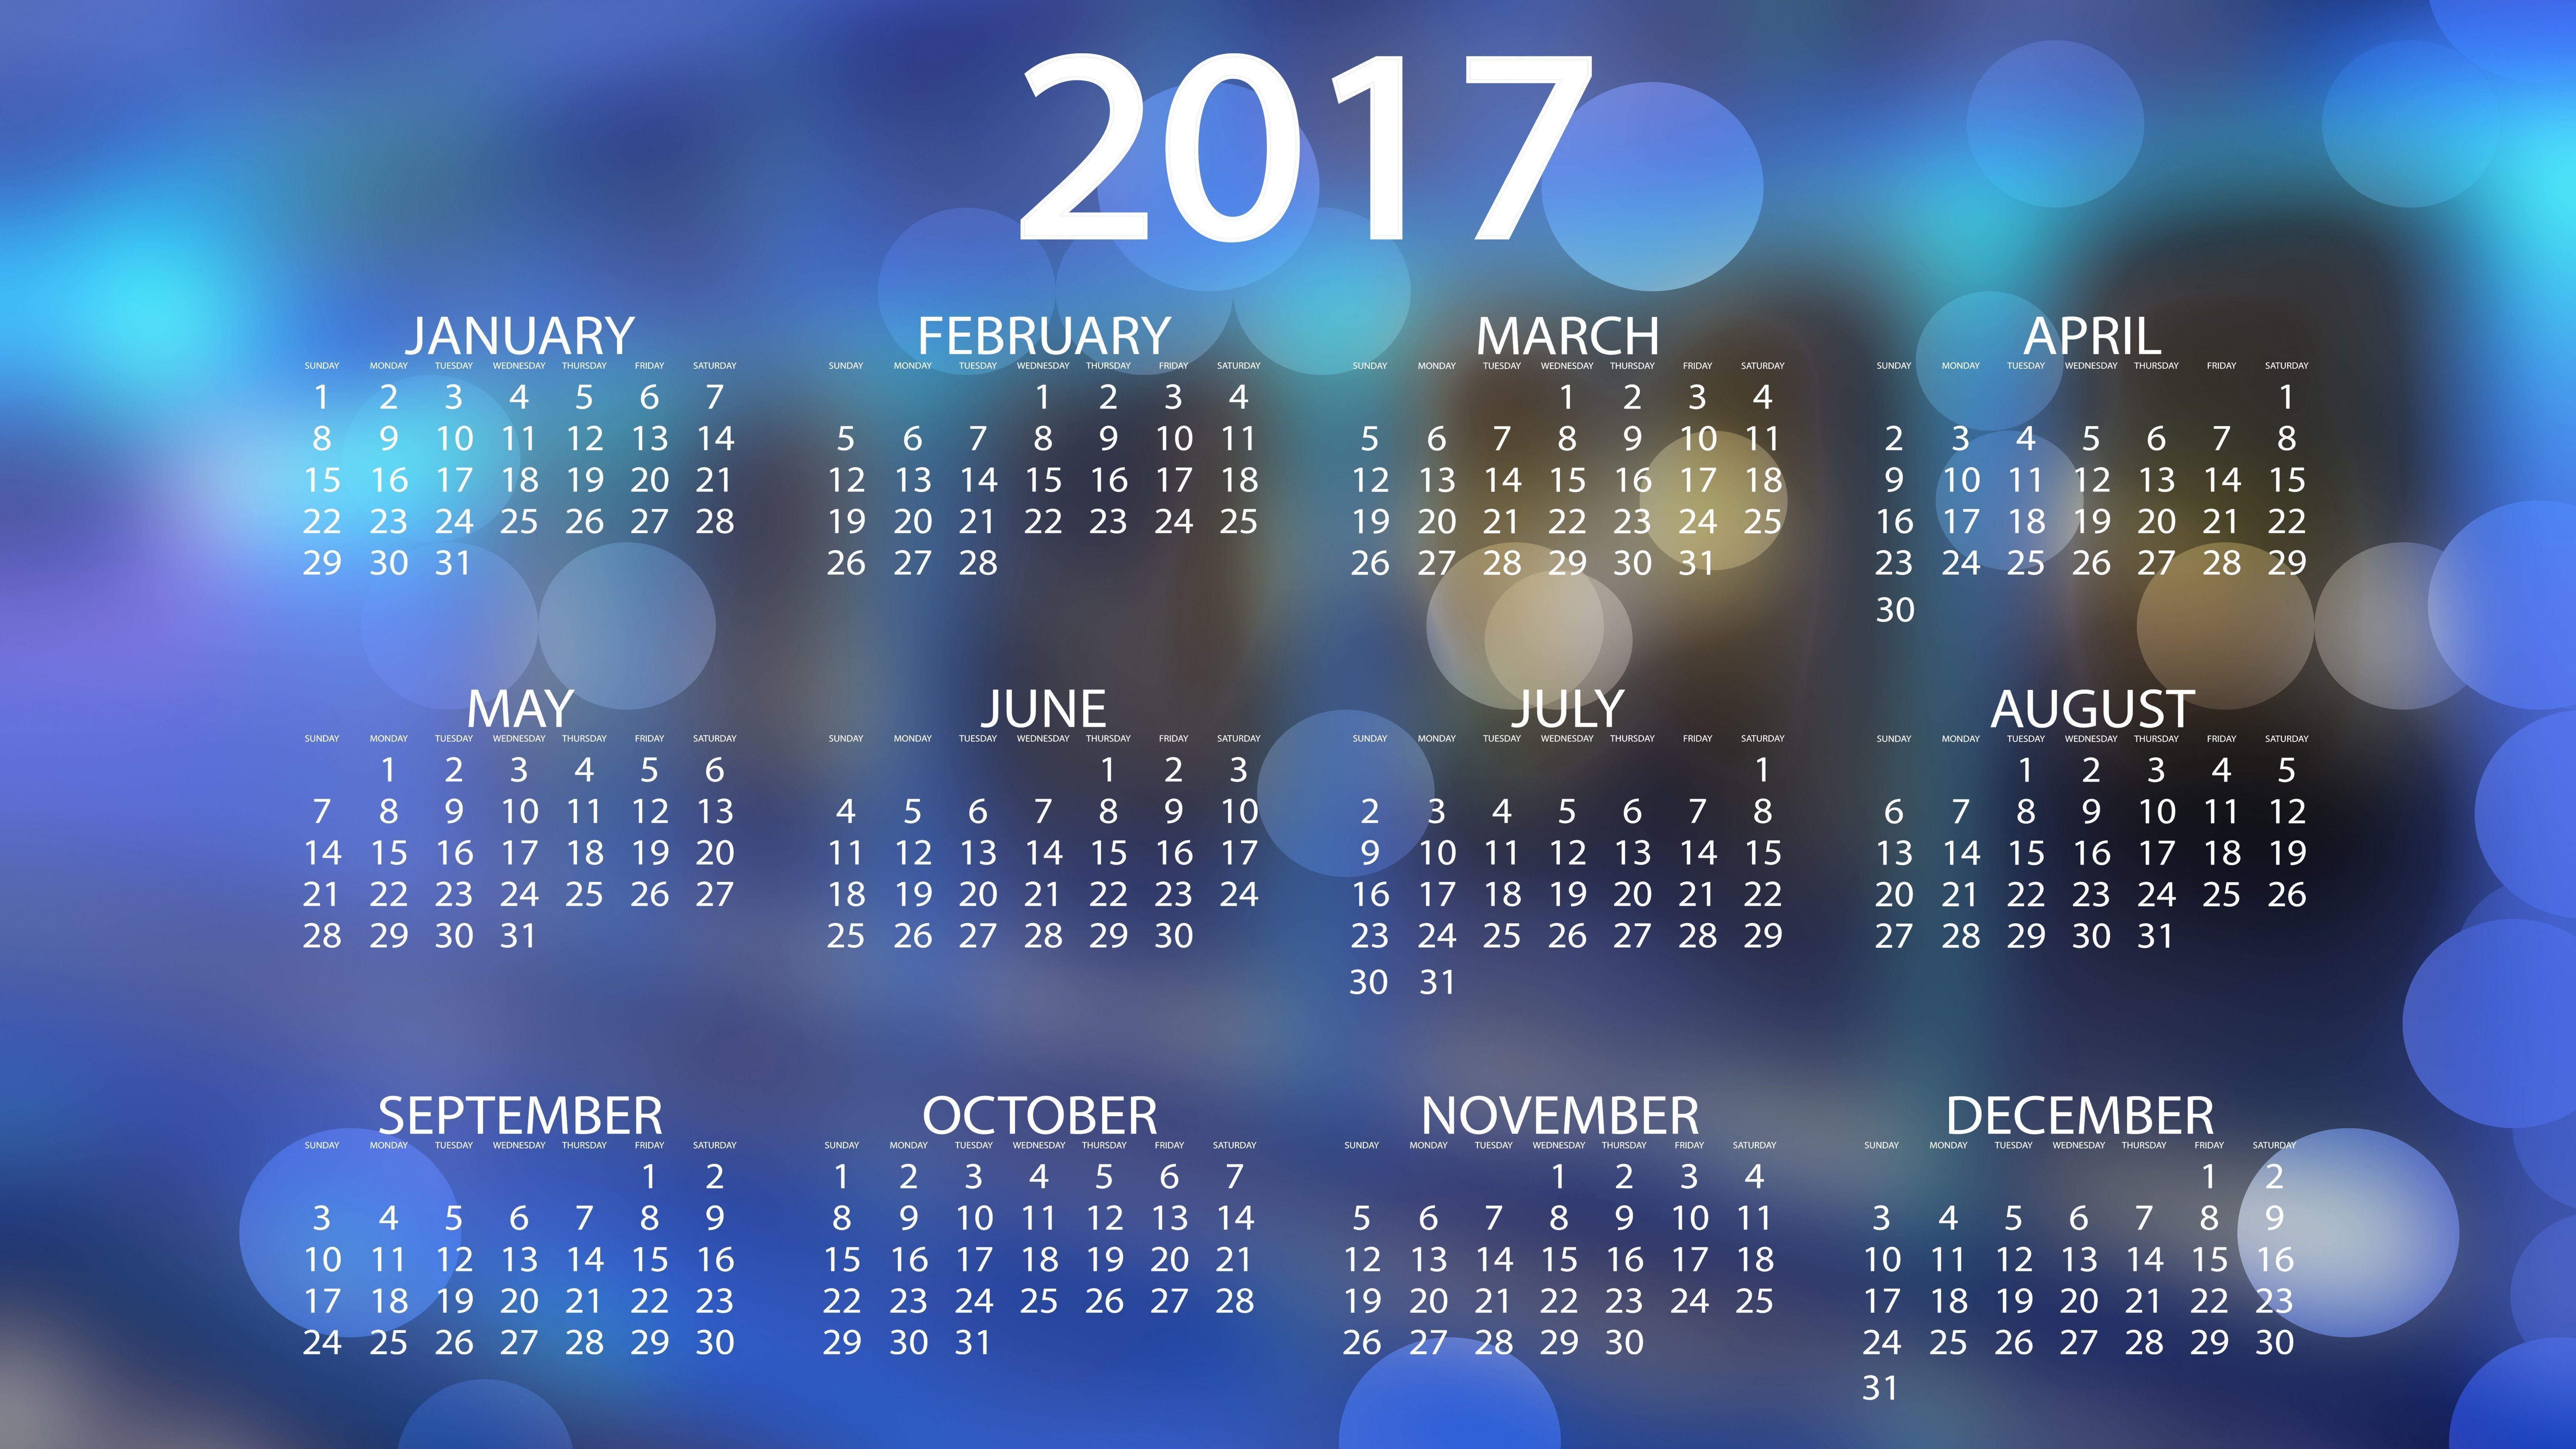 2017 Calendar Wallpapers